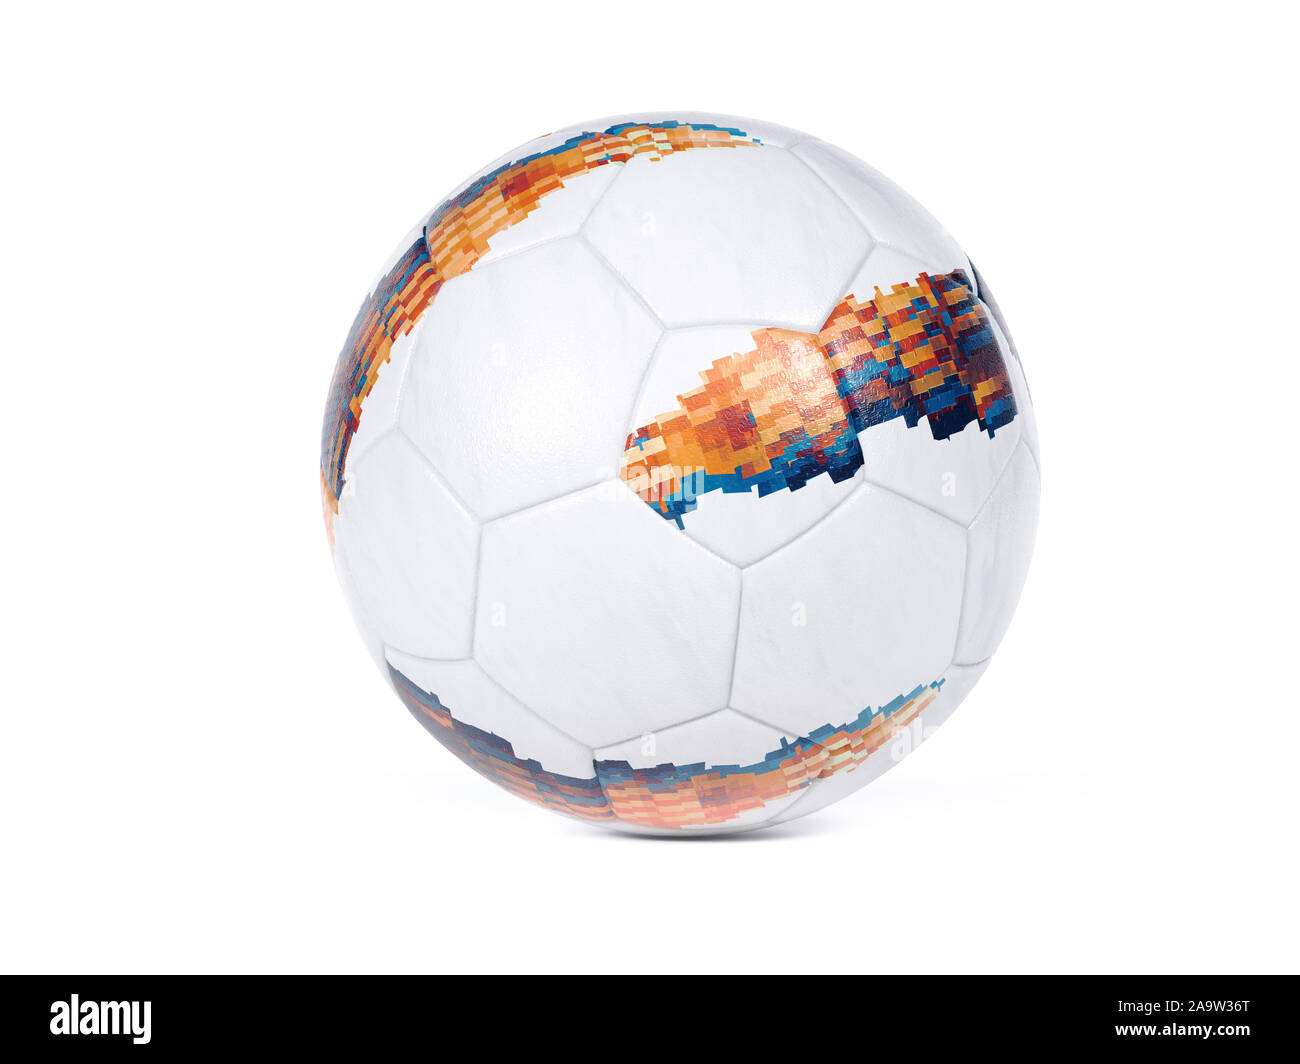 Calcio bianco con colorati abstract disegno geometrico sulla superficie su uno sfondo bianco con piccola ombra e spazio di copia Foto Stock